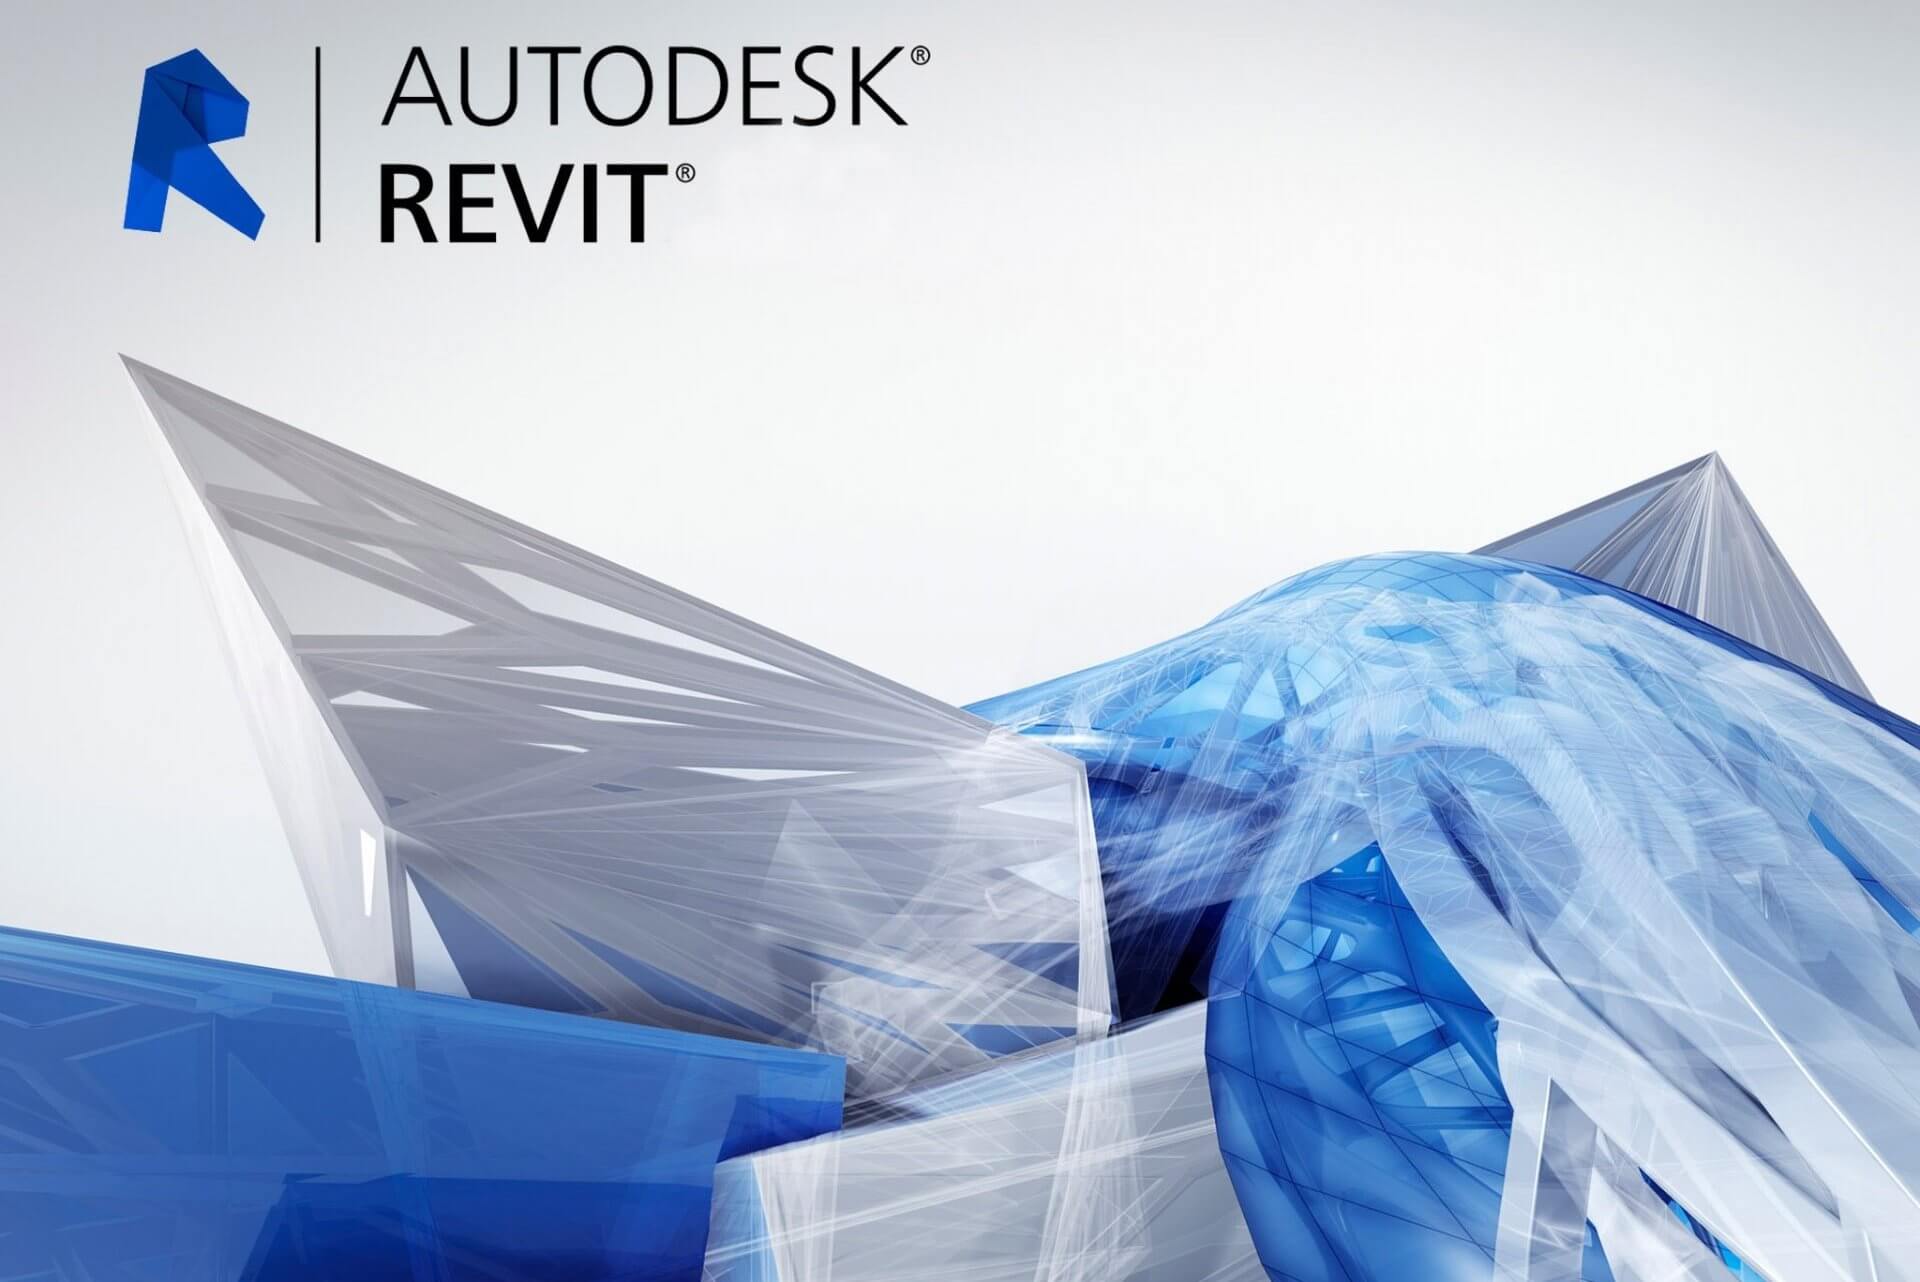 Autodesk architecture. Autodesk Revit логотип. Проектирование на Autodesk Revit. Autodesk Revit 2022. Автодеск ревит архитектура.